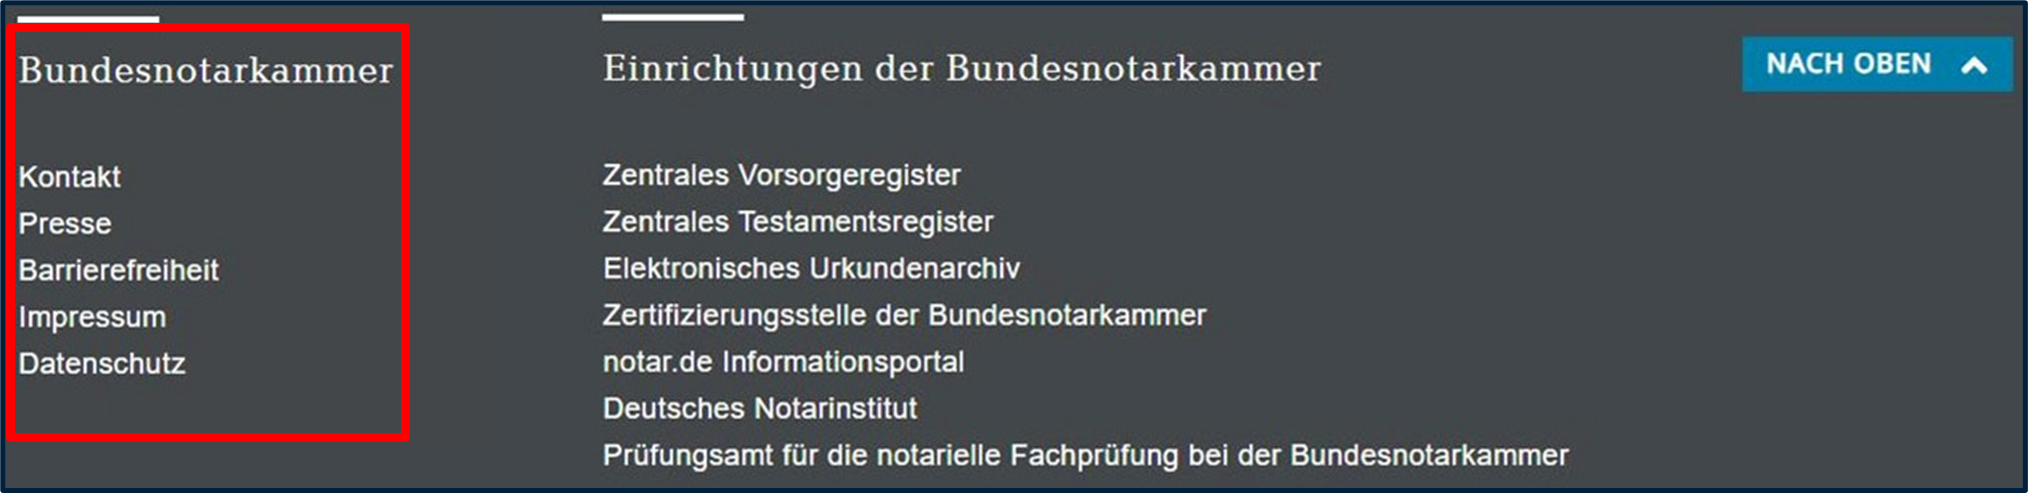 Screenshot Fußzeile von www.bnotk.de - Bereich "Bundesnotarkammer"